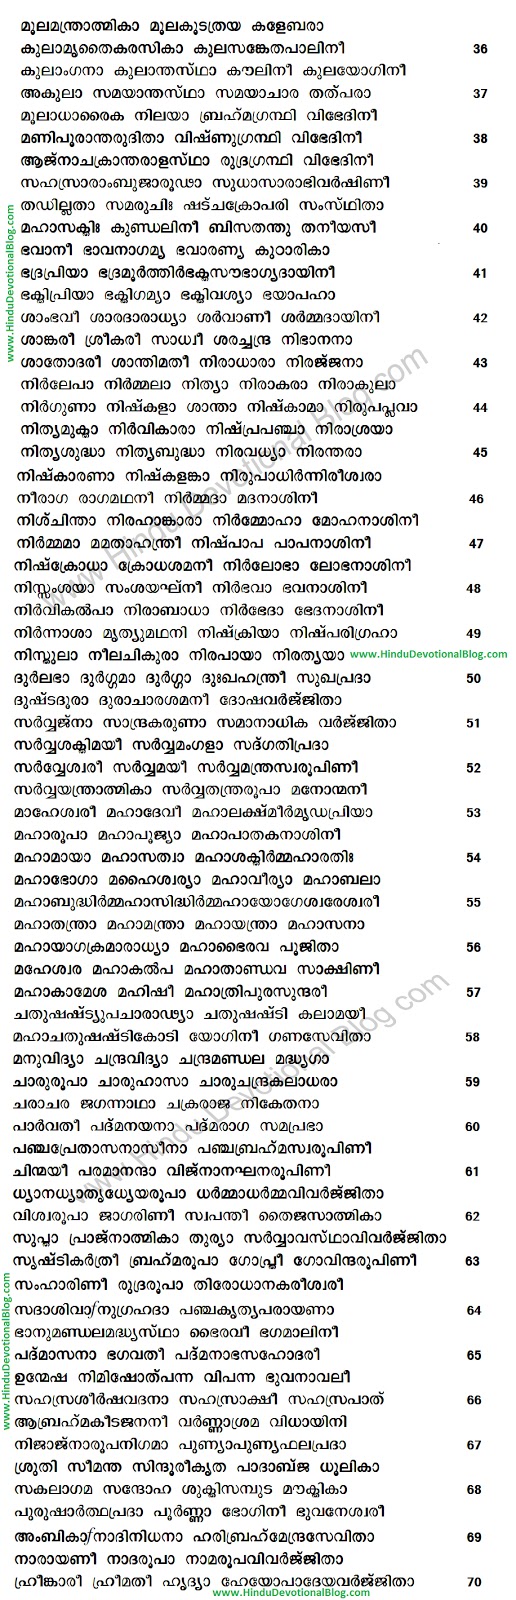 vishnu sahasranamam lyrics in tamil pdf